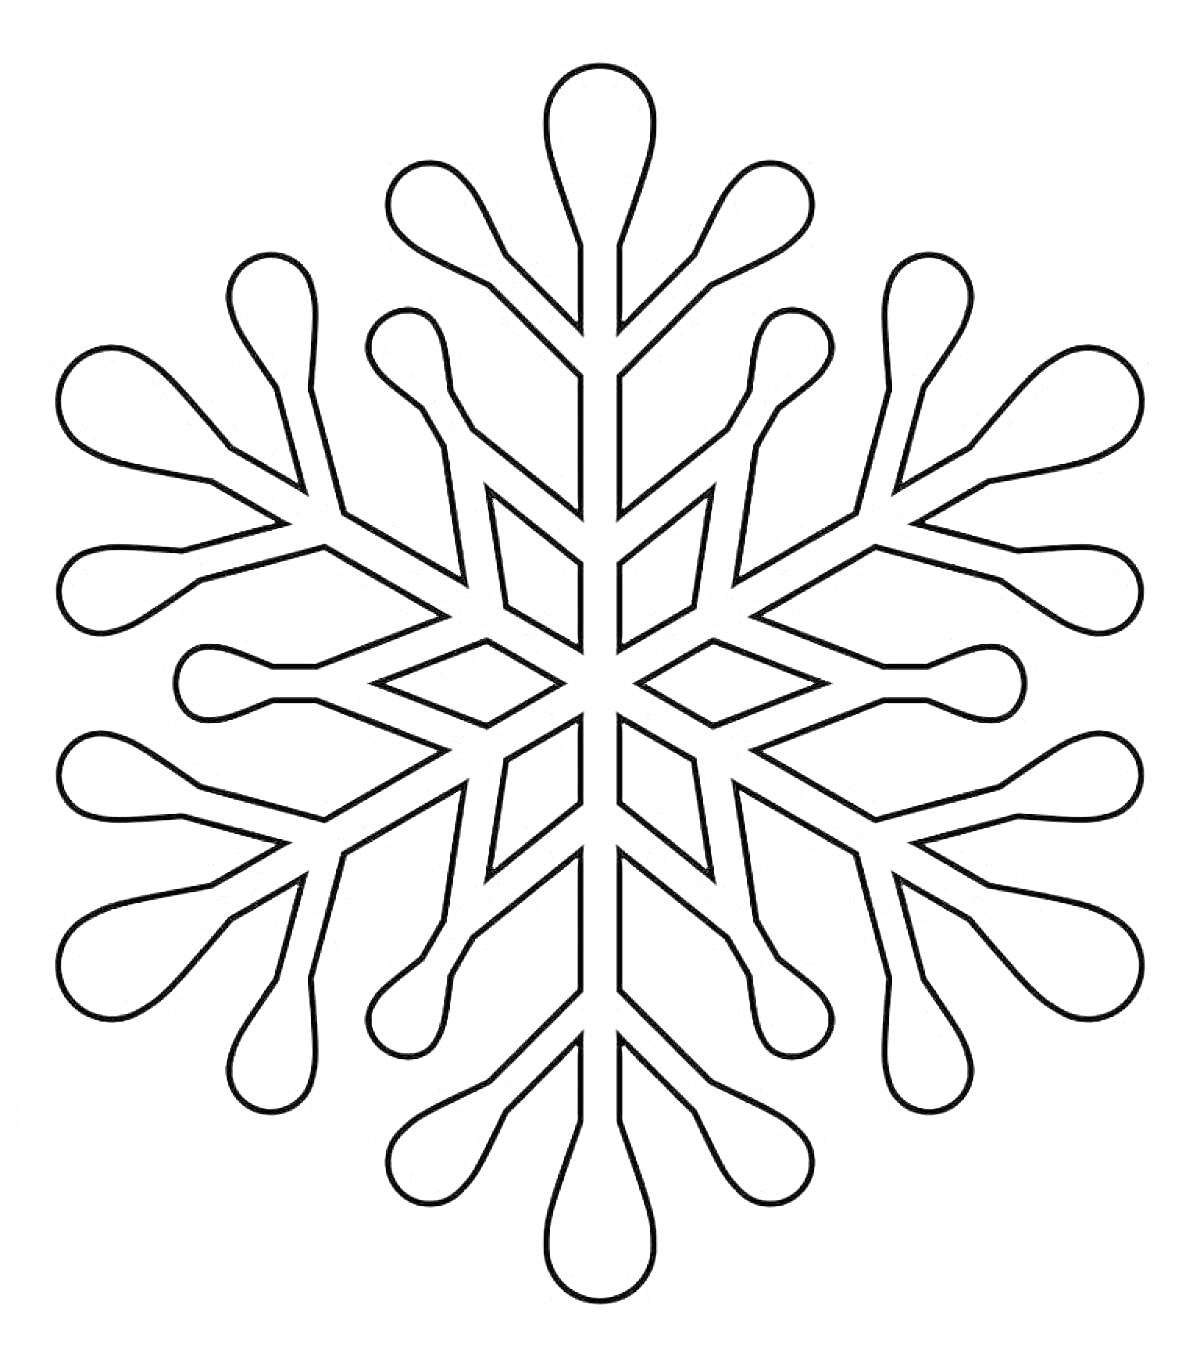 Раскраска Снежинка с шестиконечной симметрией и каплевидными концами